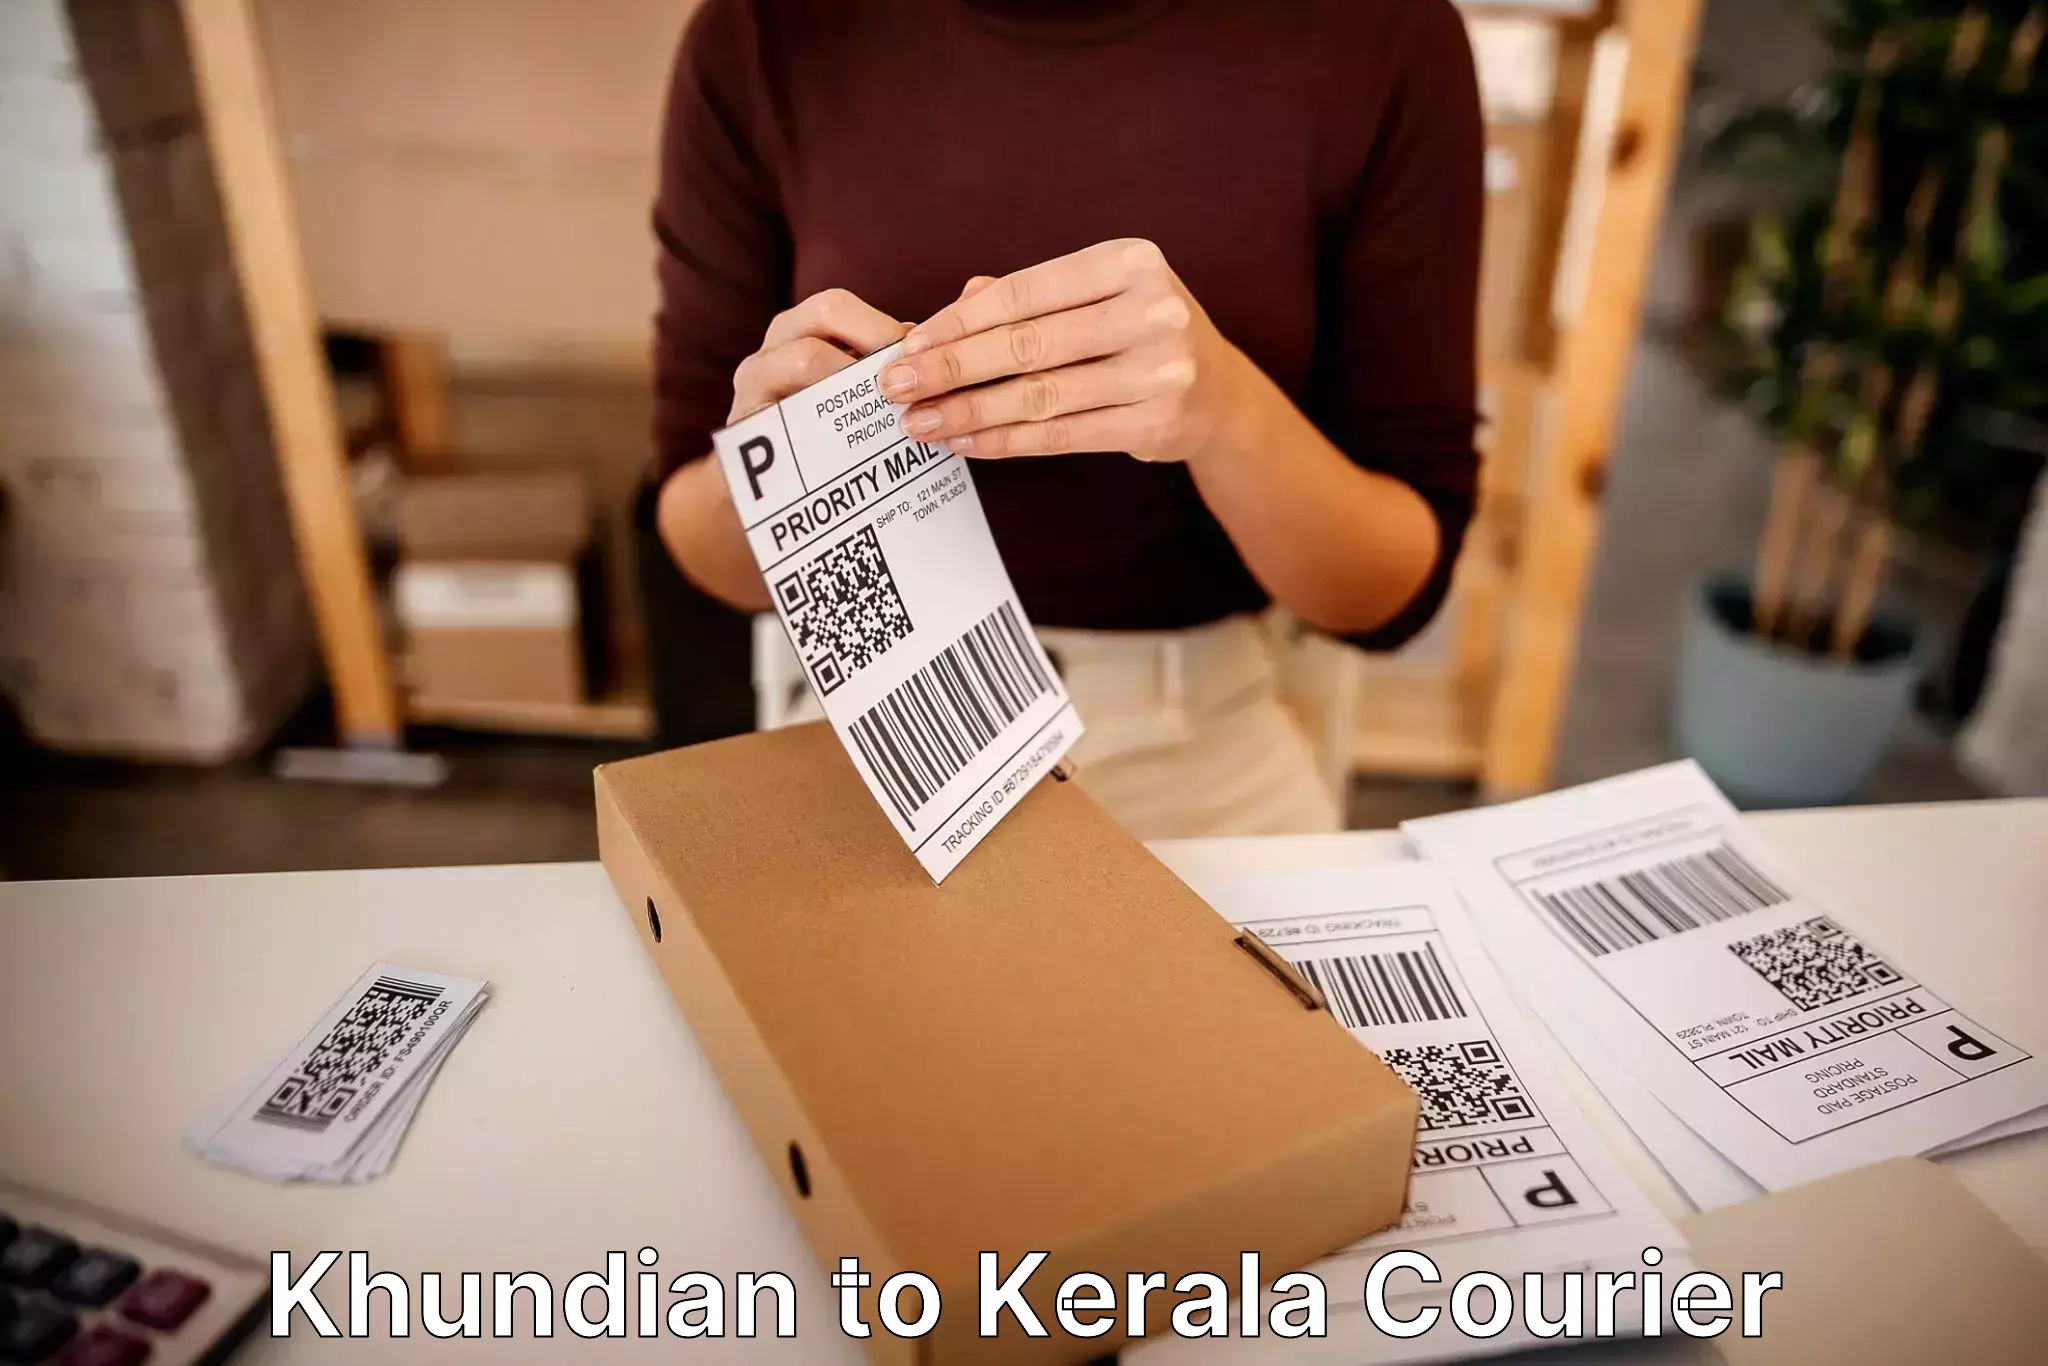 Furniture moving experts Khundian to Kerala